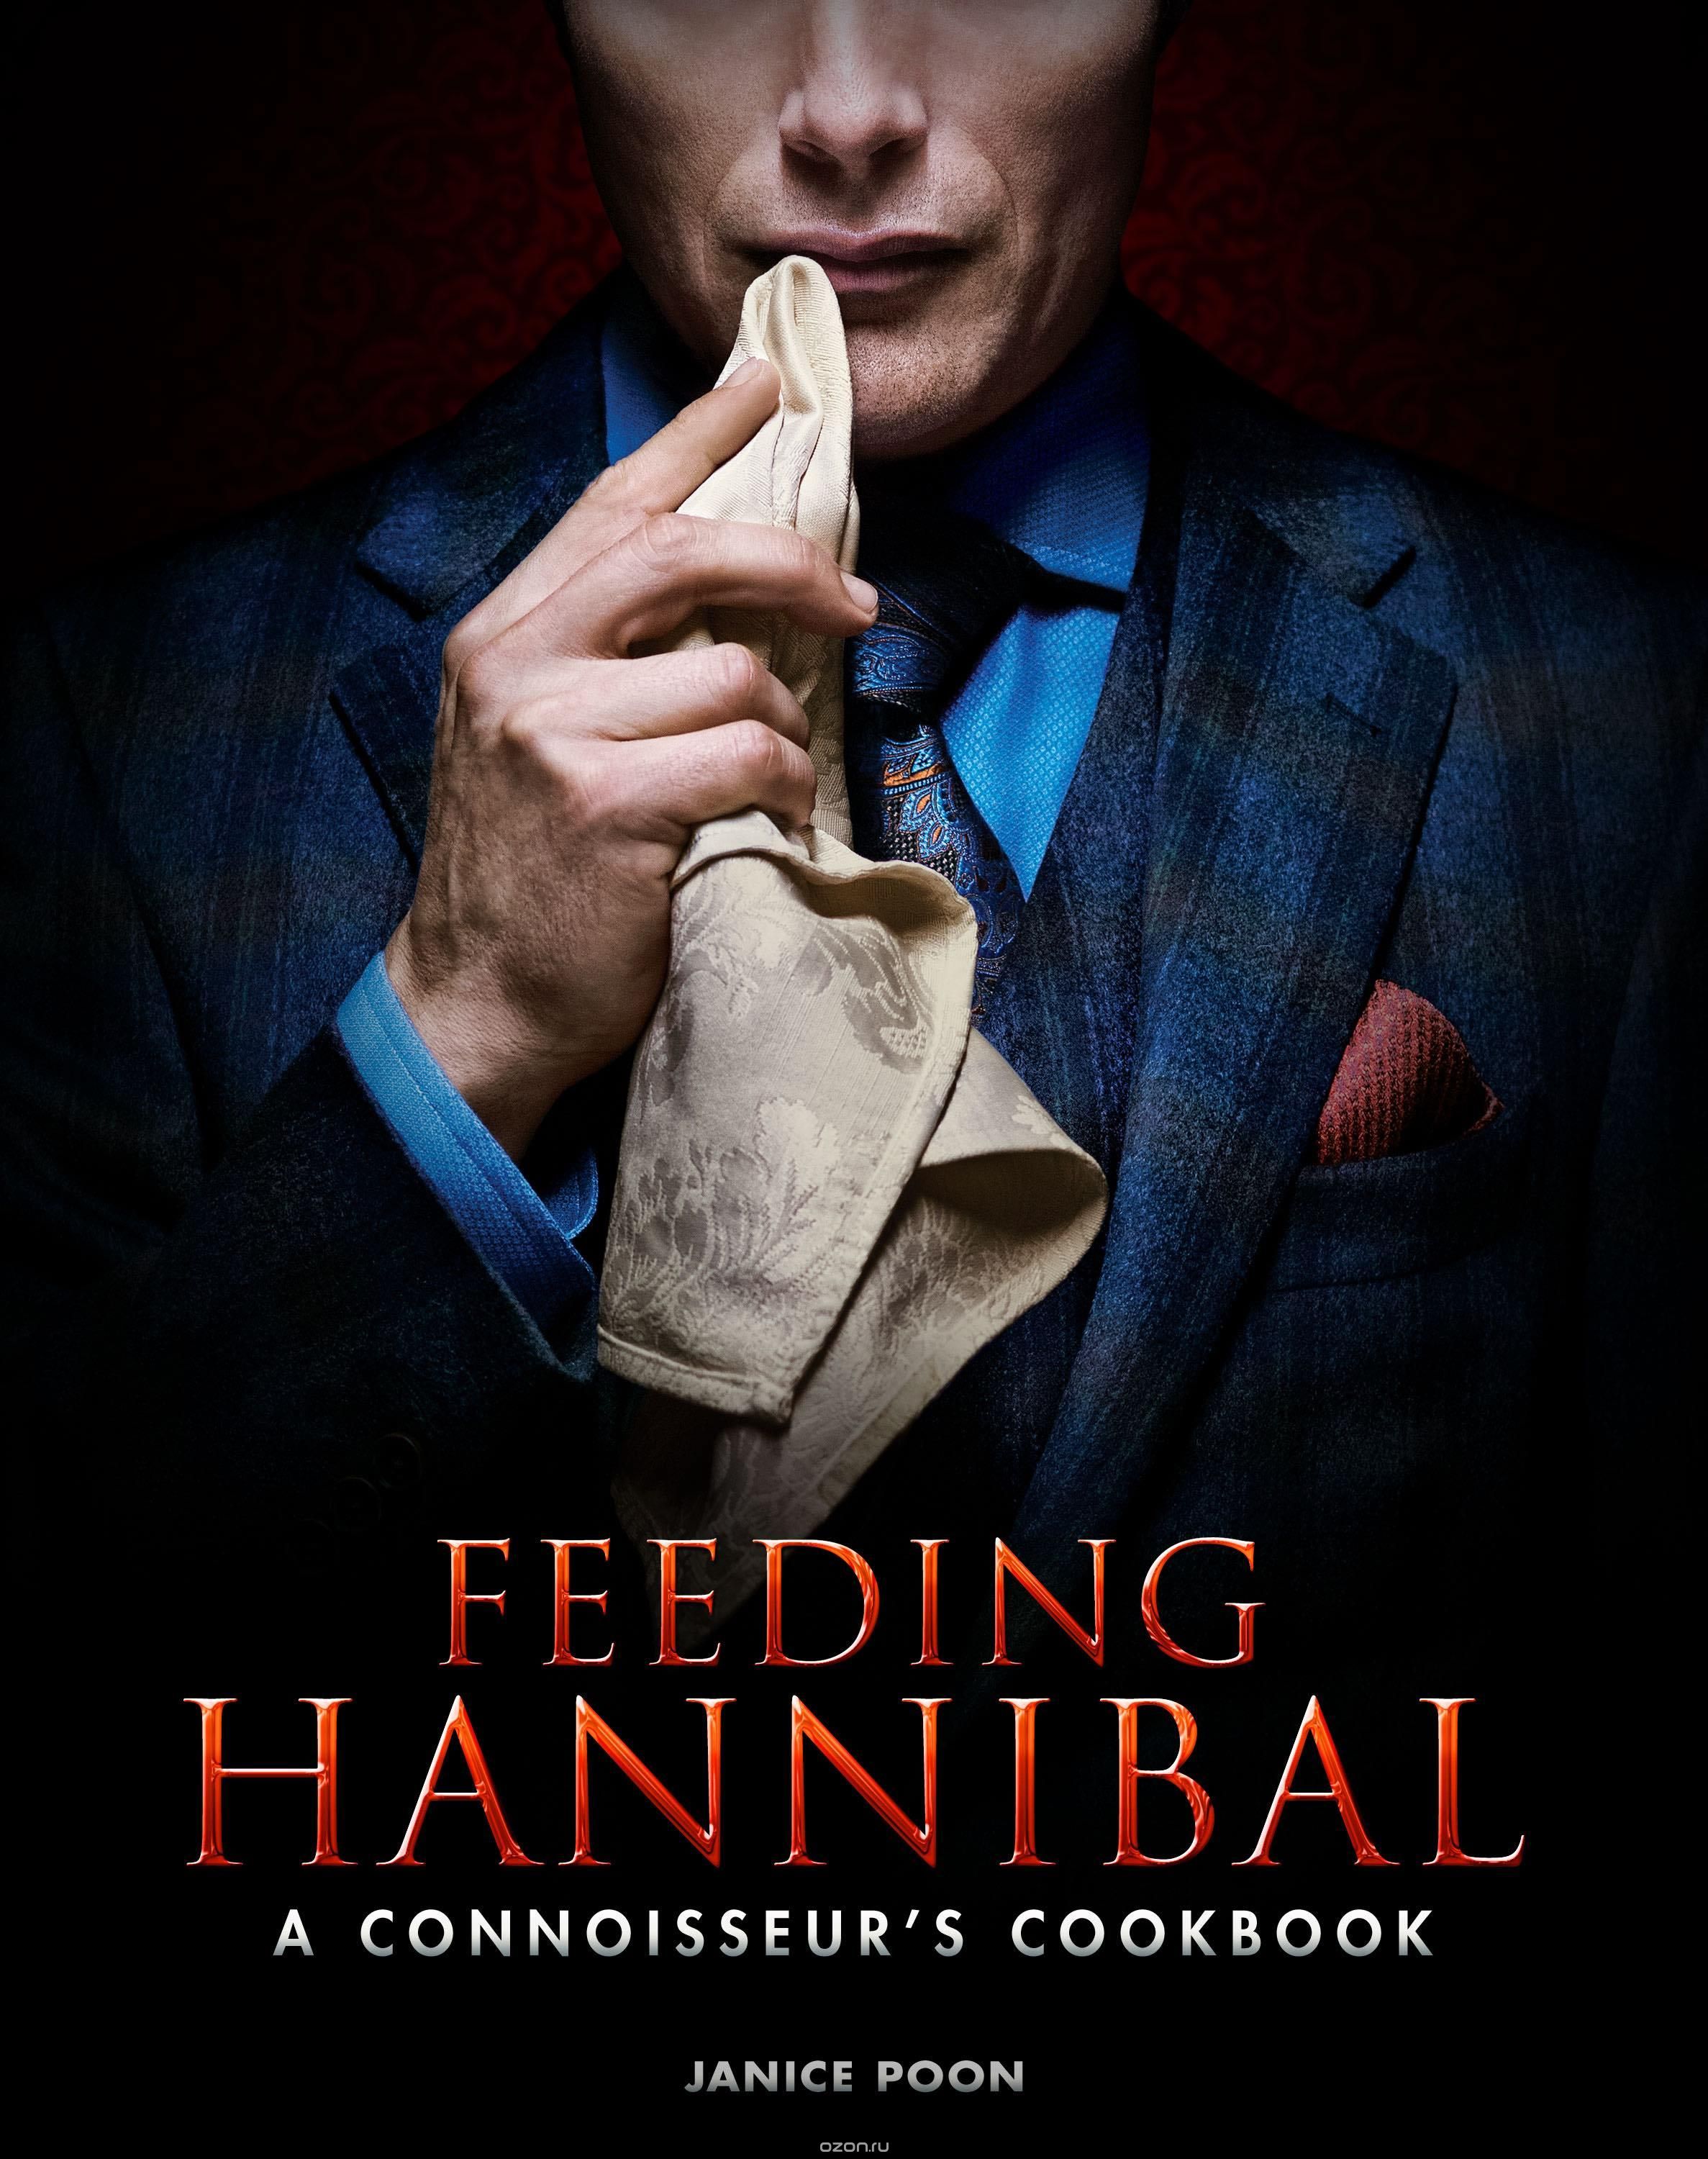 Скачать книгу "Feeding Hannibal: a Connoisseur's Cookbook"